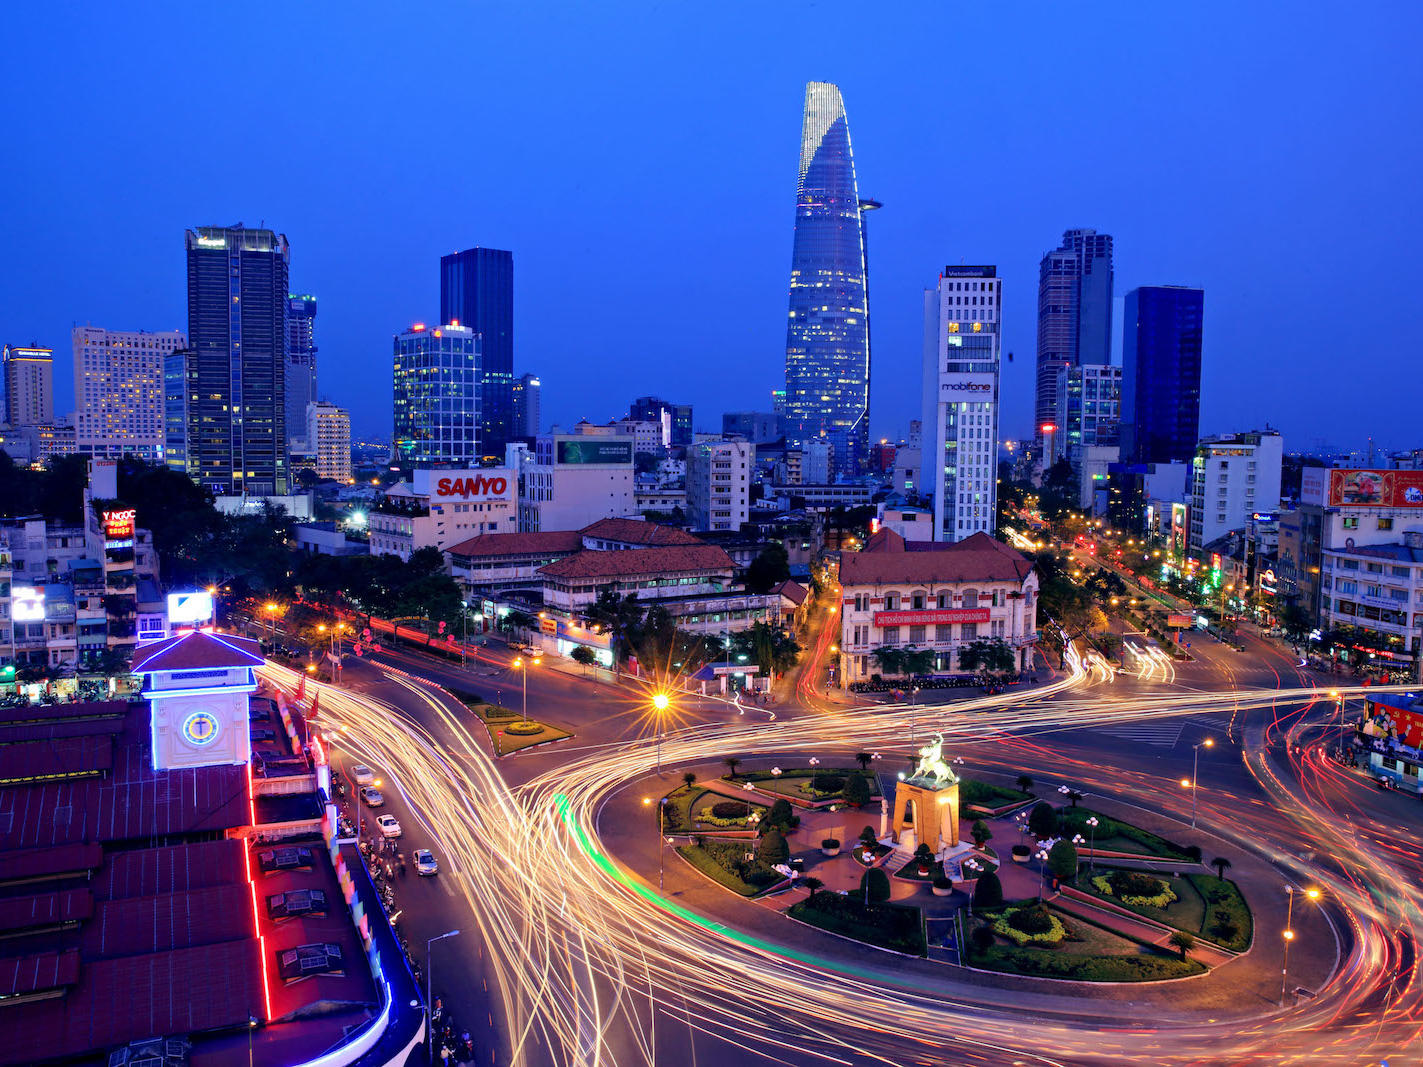 Bitexco Financial Tower vẫn là điểm nhấn giữa Sài Gòn sầm uất